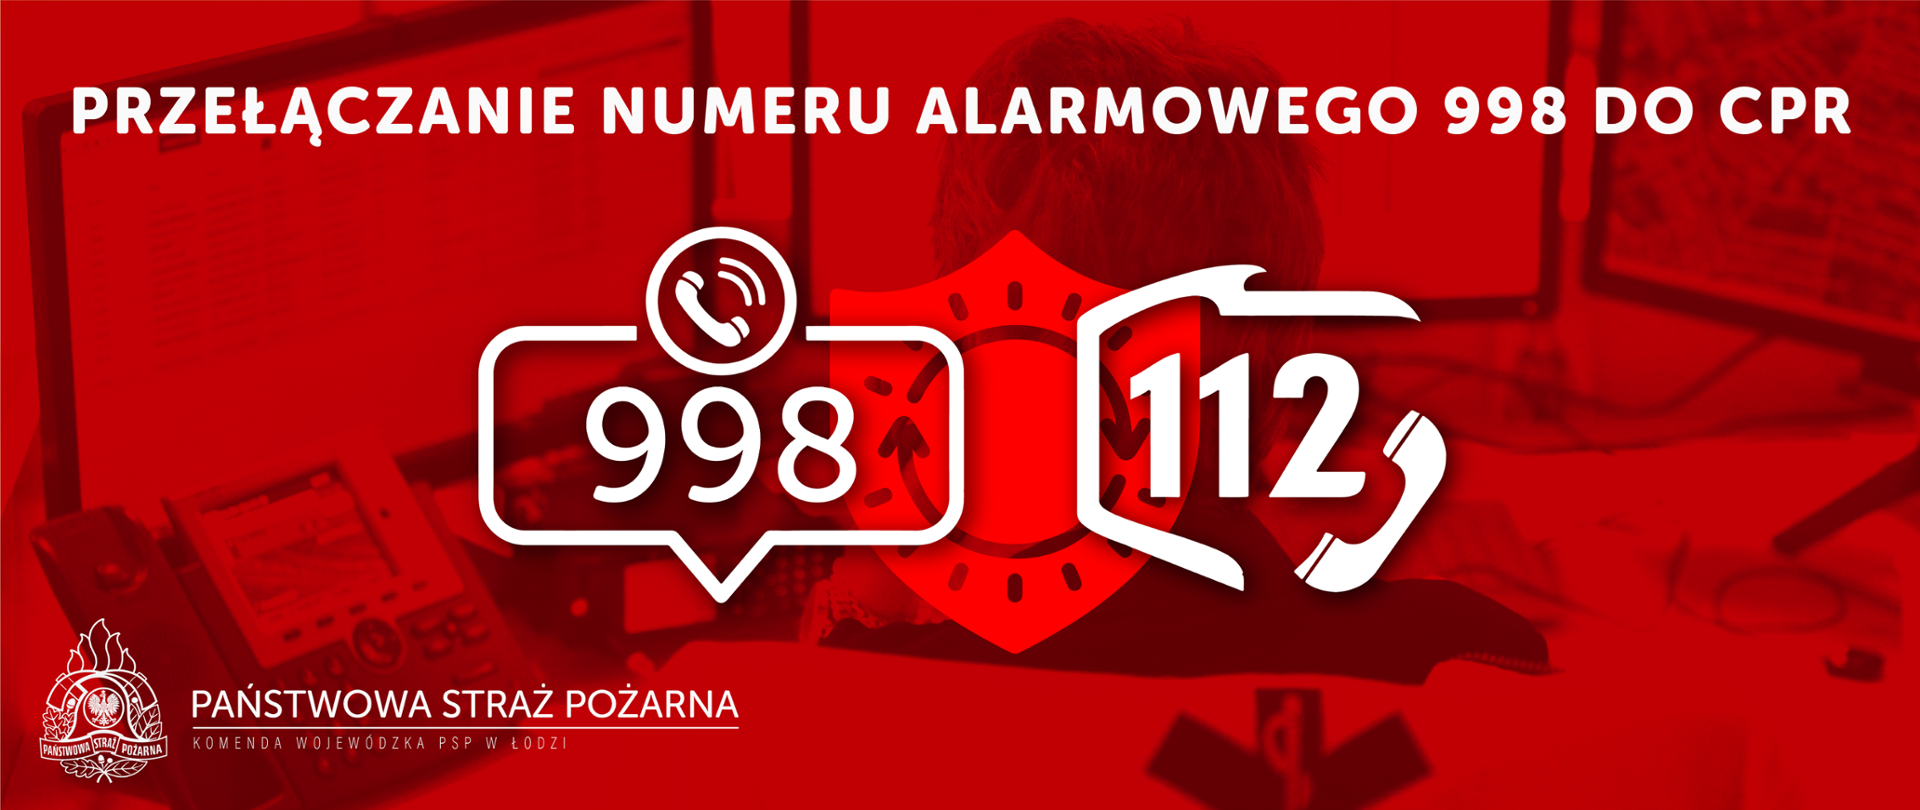 Grafika przedstawia napis "Przełączanie numeru alarmowego 998 do CPR" poniżej logo numeru alarmowego 998 i 112. W lewym dolnym rogu logo PSP i napis Państwowa Straż Pożarna Komenda wojewódzka PSP w Łodzi. Całość na czerwonym tle. 